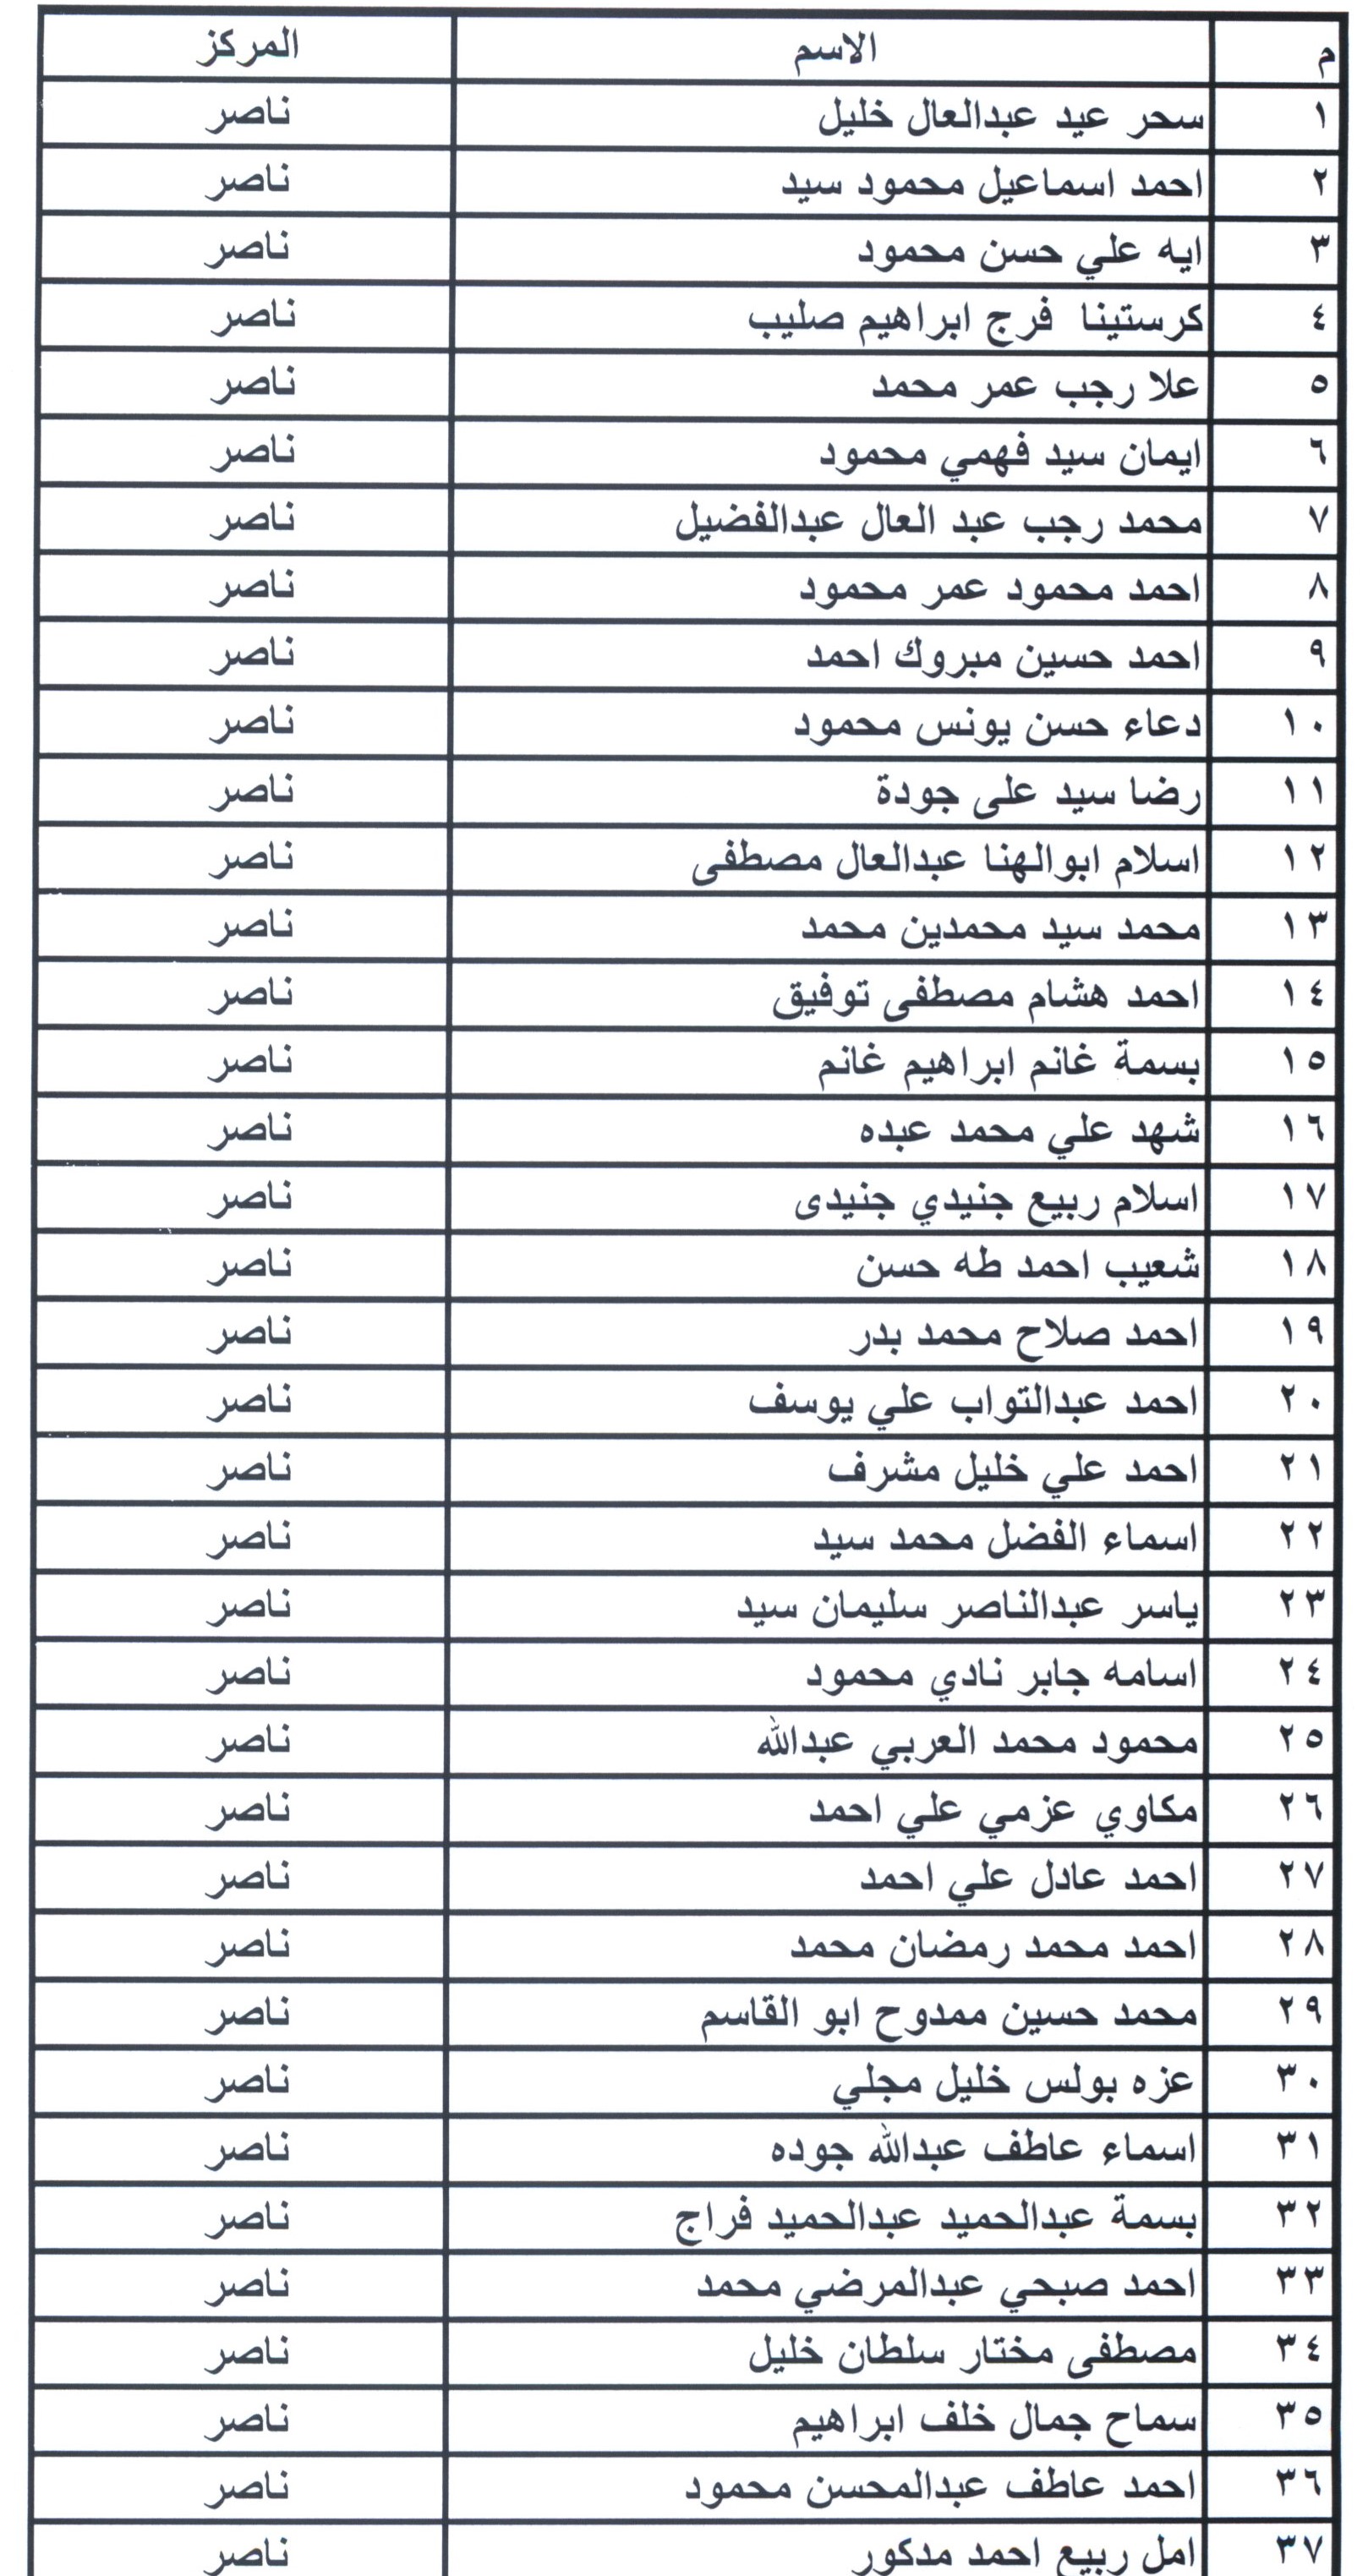 أسماء مرشحى شغل الوظائف ببمحافظة بنى سويف (8)